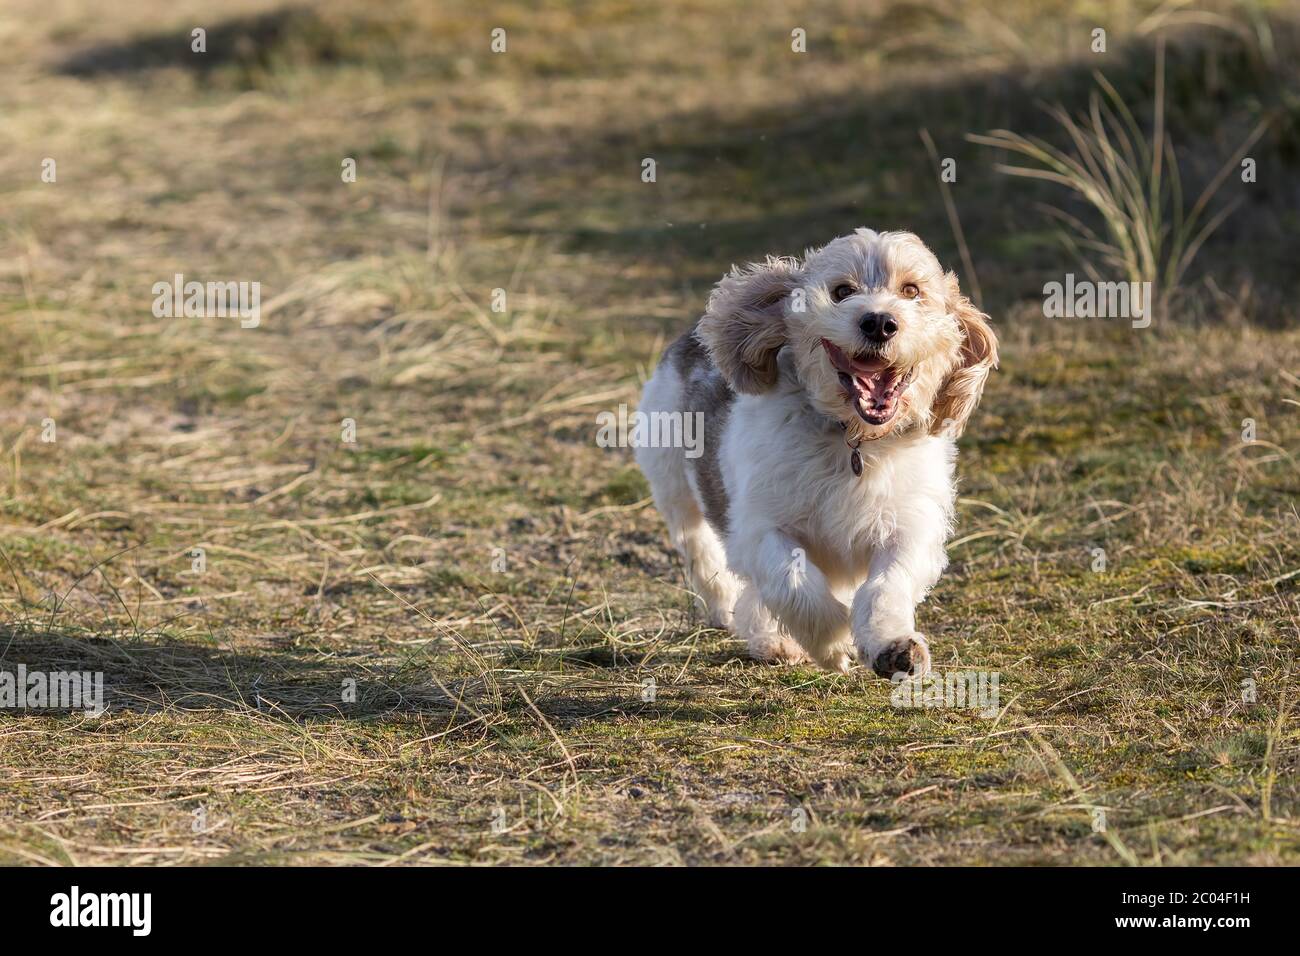 Fröhliches Hundegesicht. Nette Hunde mit Spaß laufen aus der Leine. Lustige Tier Meme Bild. Loyales Haustier spielen und genießen Freiheit auf dem Land. Stockfoto